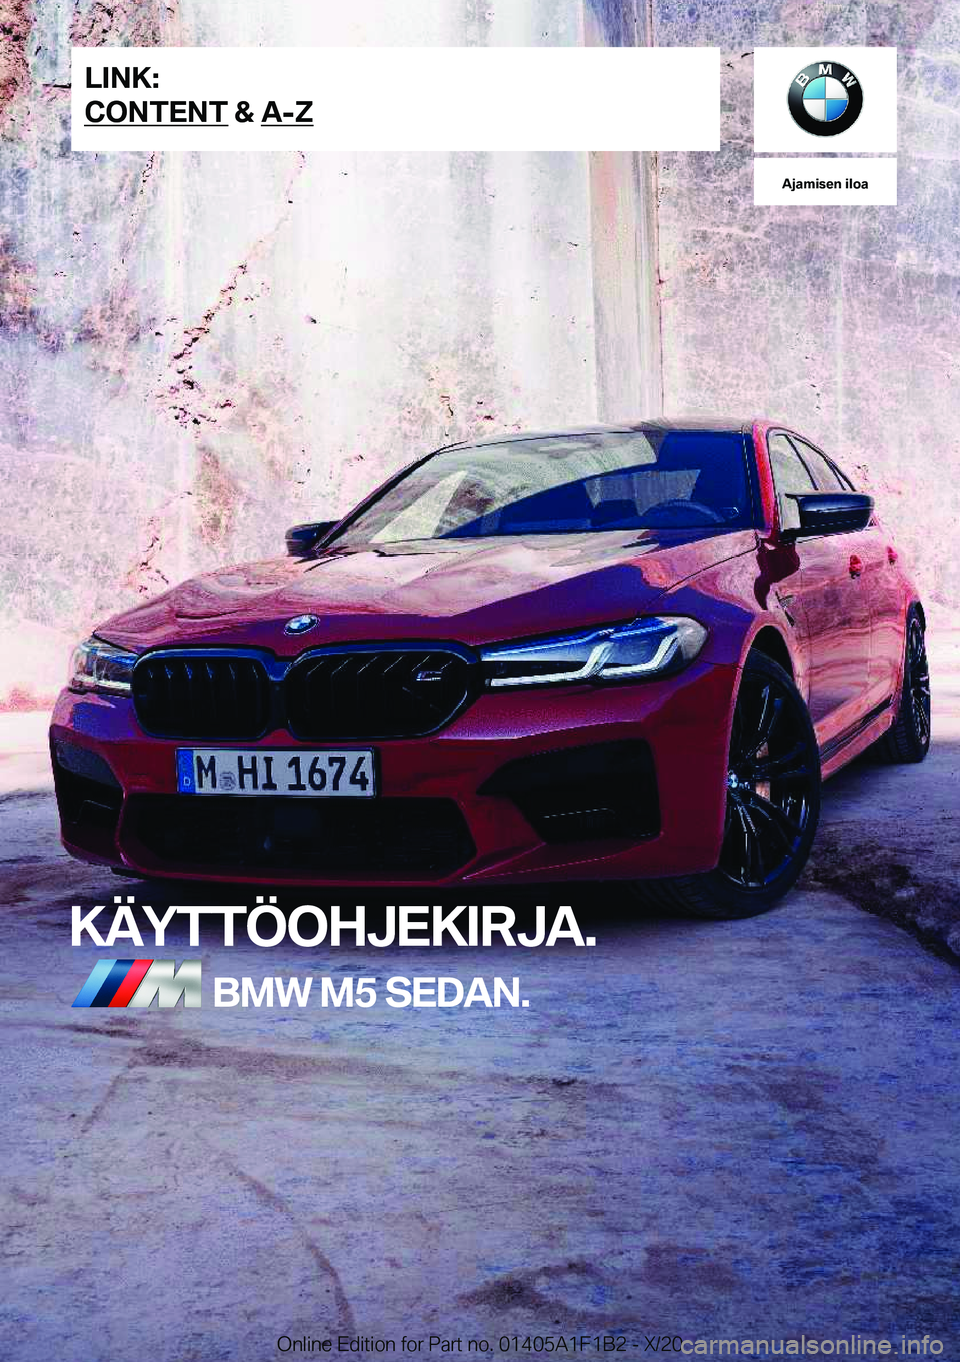 BMW M5 2021  Omistajan Käsikirja (in Finnish) �A�j�a�m�i�s�e�n��i�l�o�a
�K�